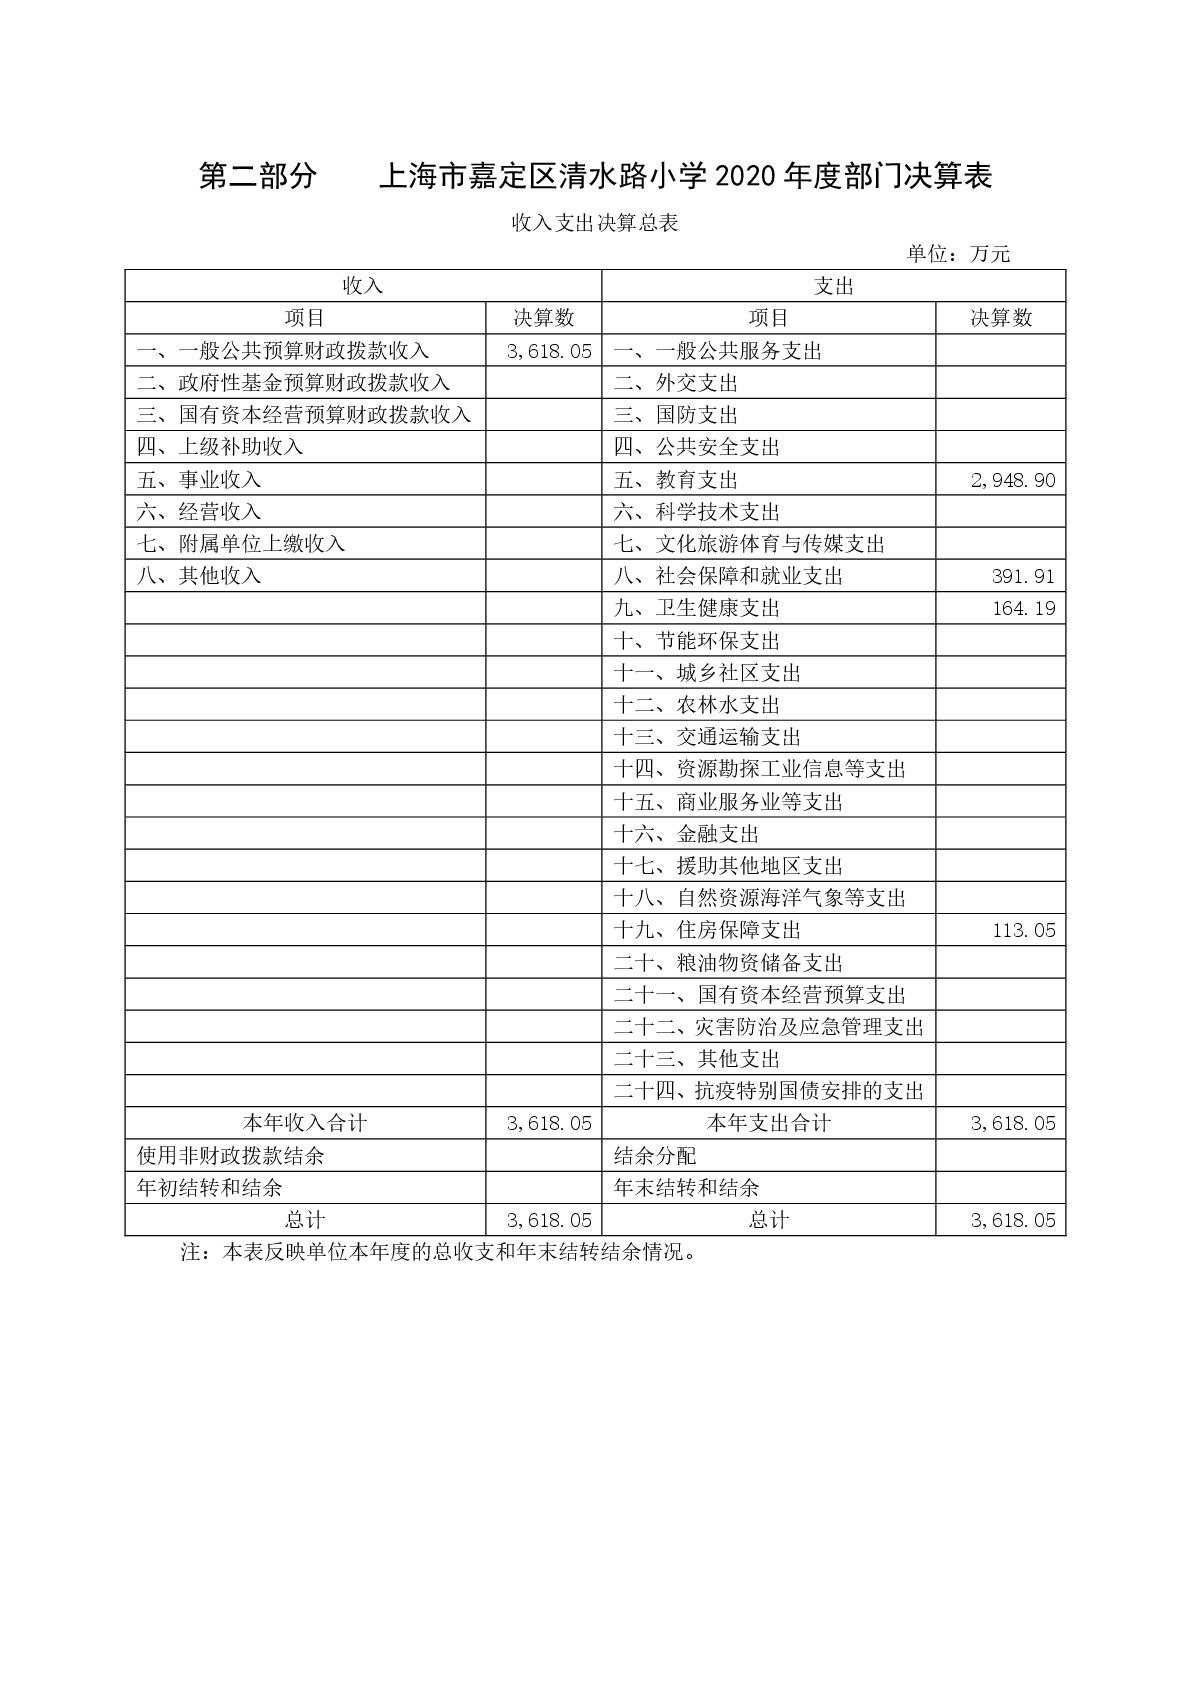 015上海市嘉定区清水路小学2020年度决算-005.jpg